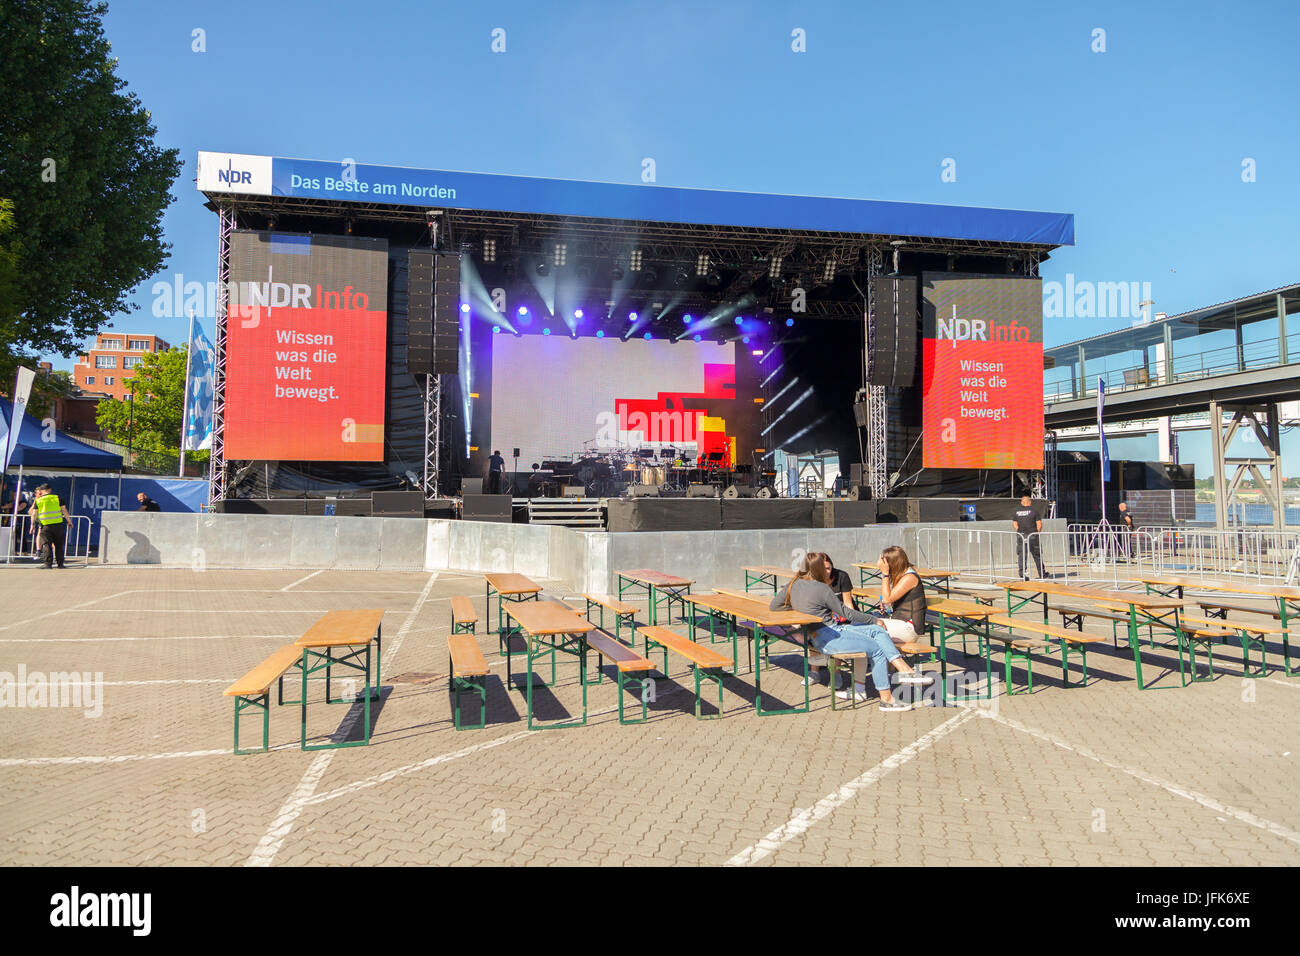 KIEL / Deutschland - 20. Juni 2017: NDR Bühne auf öffentliche Veranstaltung Kieler Woche in Deutschland. Nördlichen deutschen Rundfunk ist eine öffentliche Radio- und Breite Stockfoto